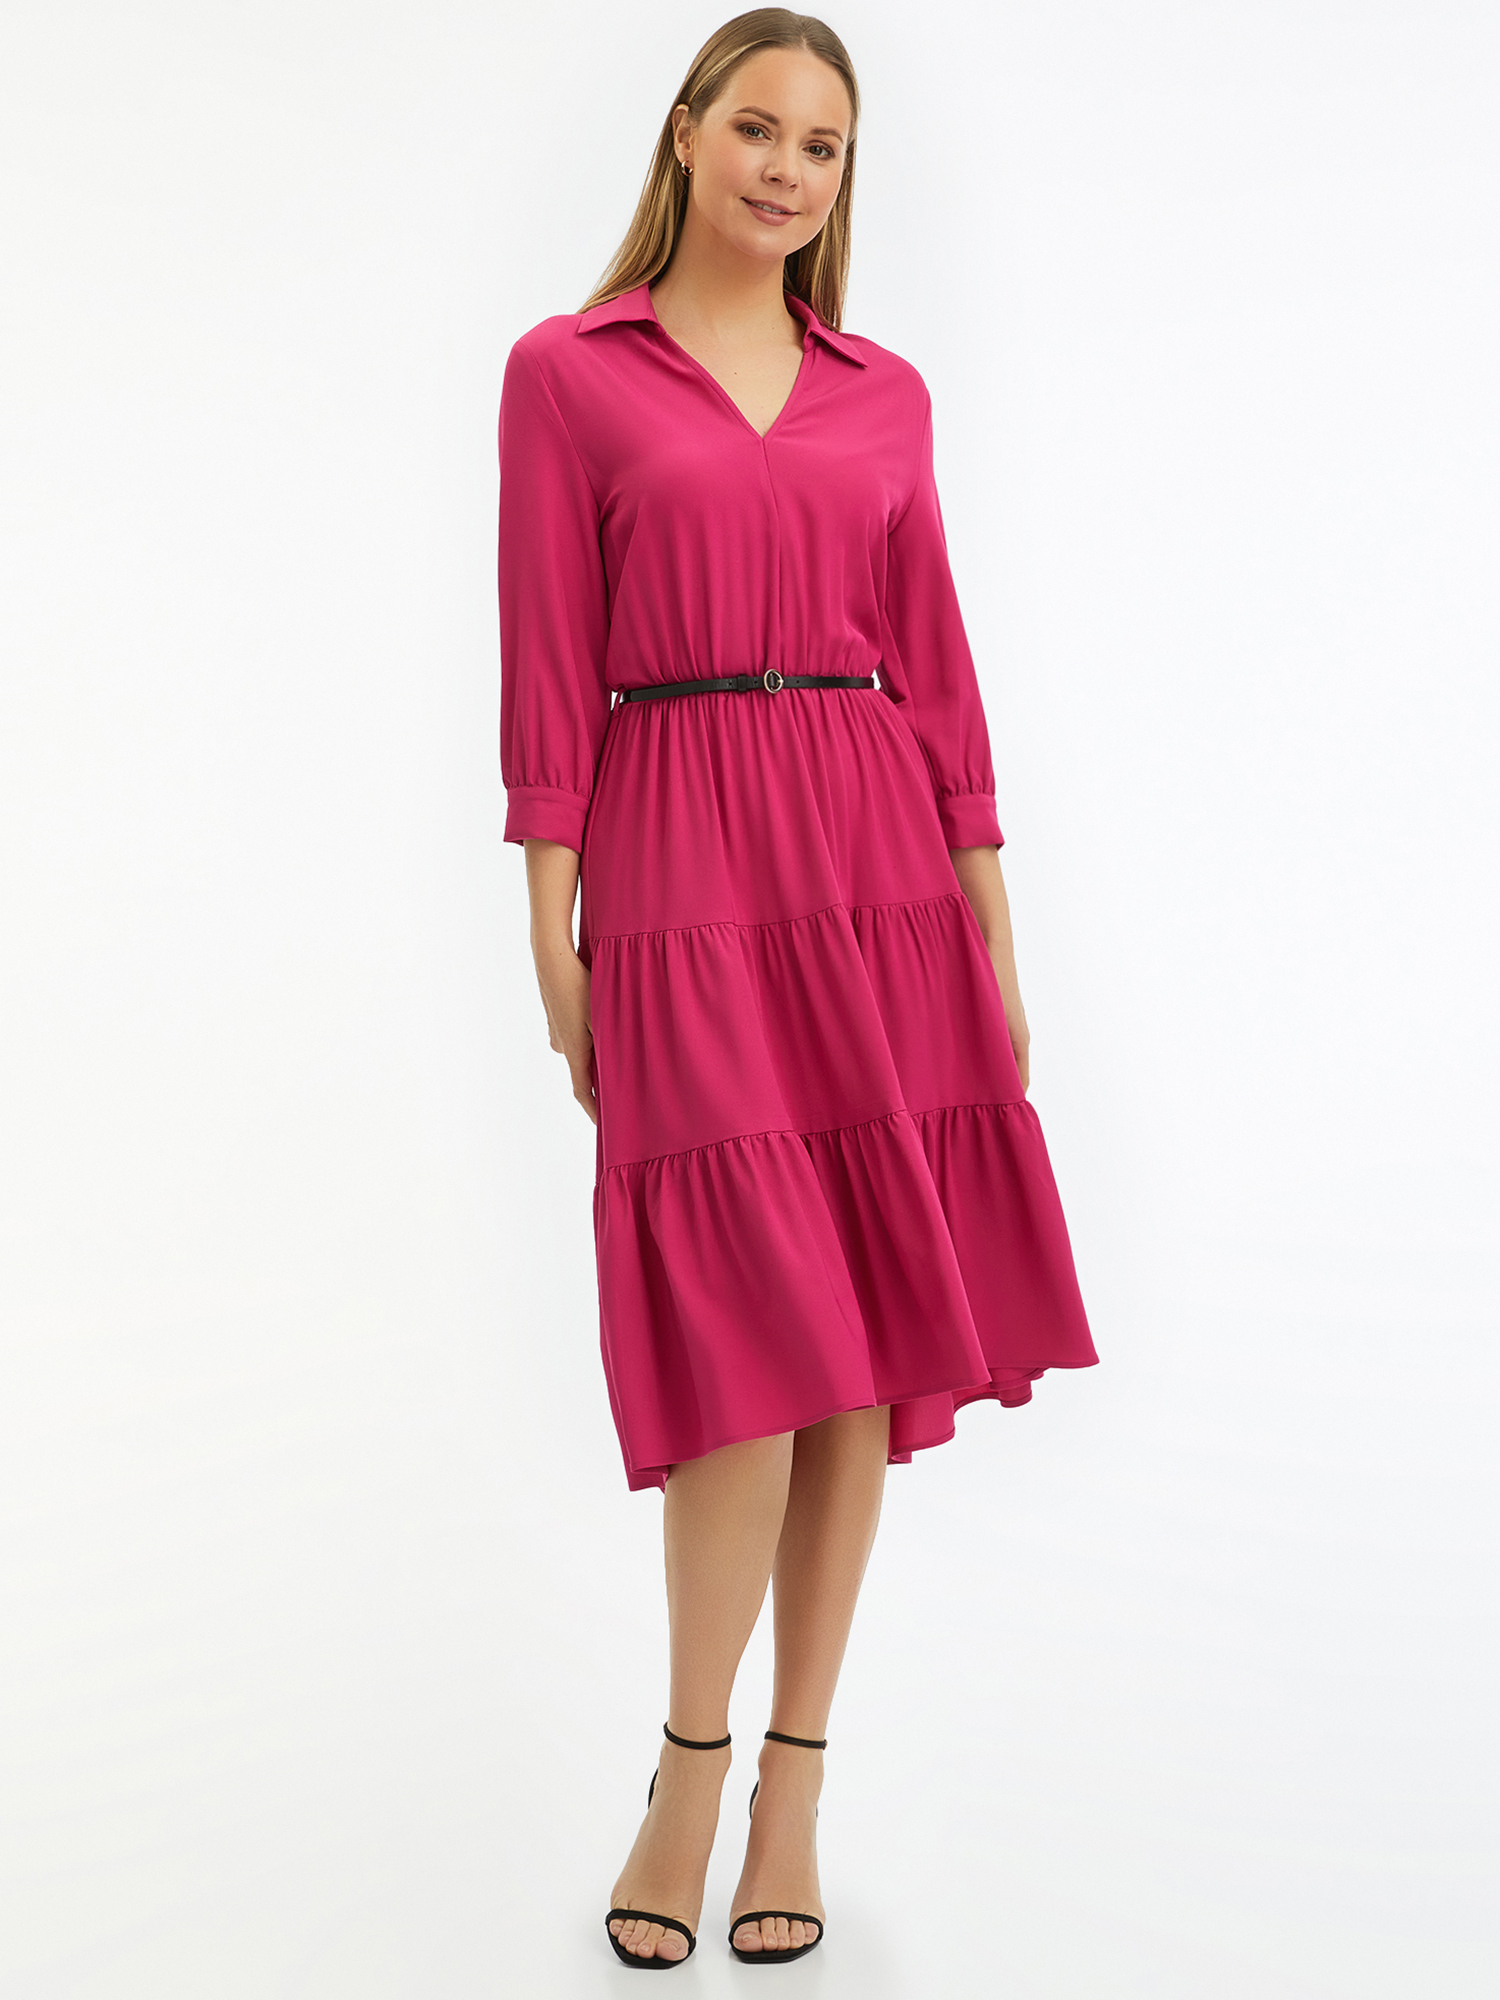 Розовое женское платье Oodji 11913061-2 размера 36 EU.